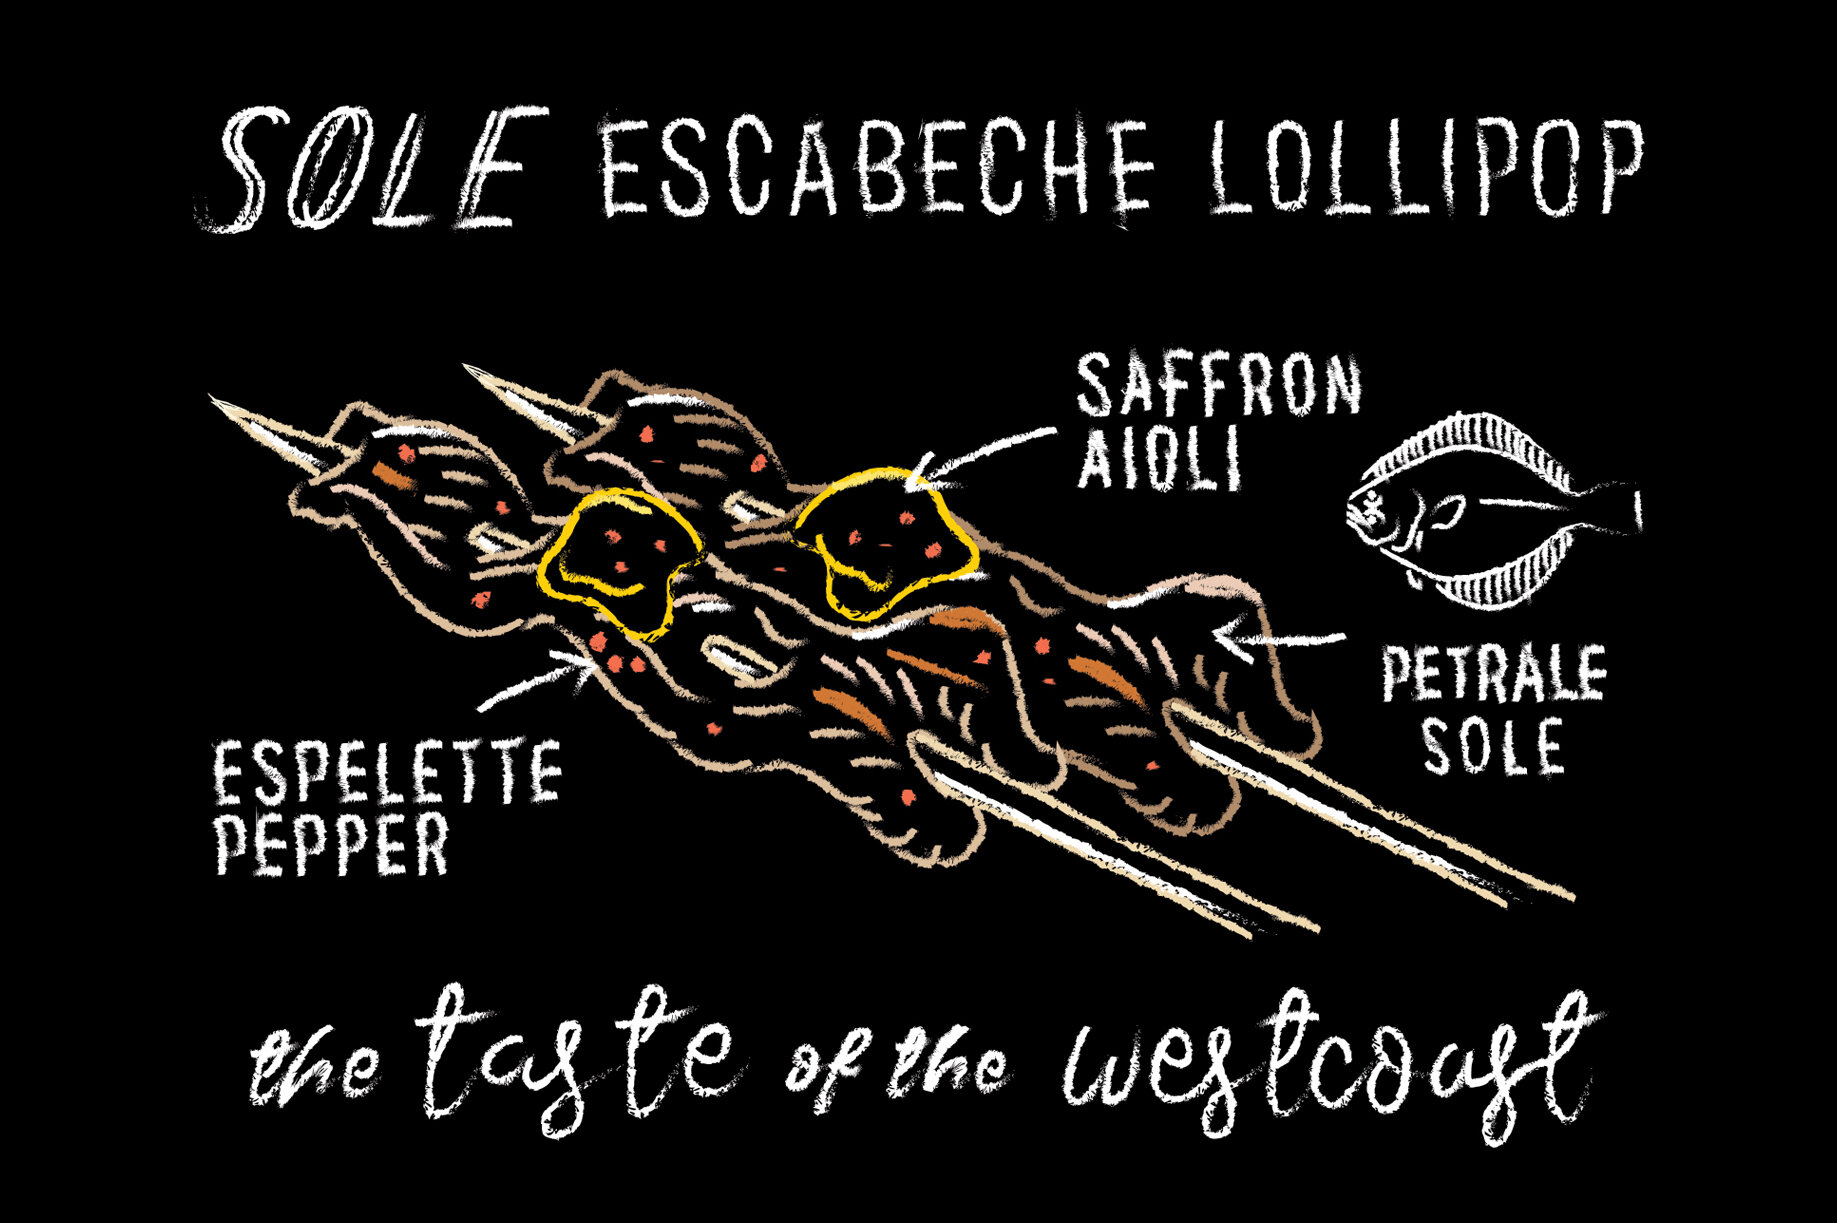 Dover Sole Escabeche Lollipop with Saffron Aioli (Copy)